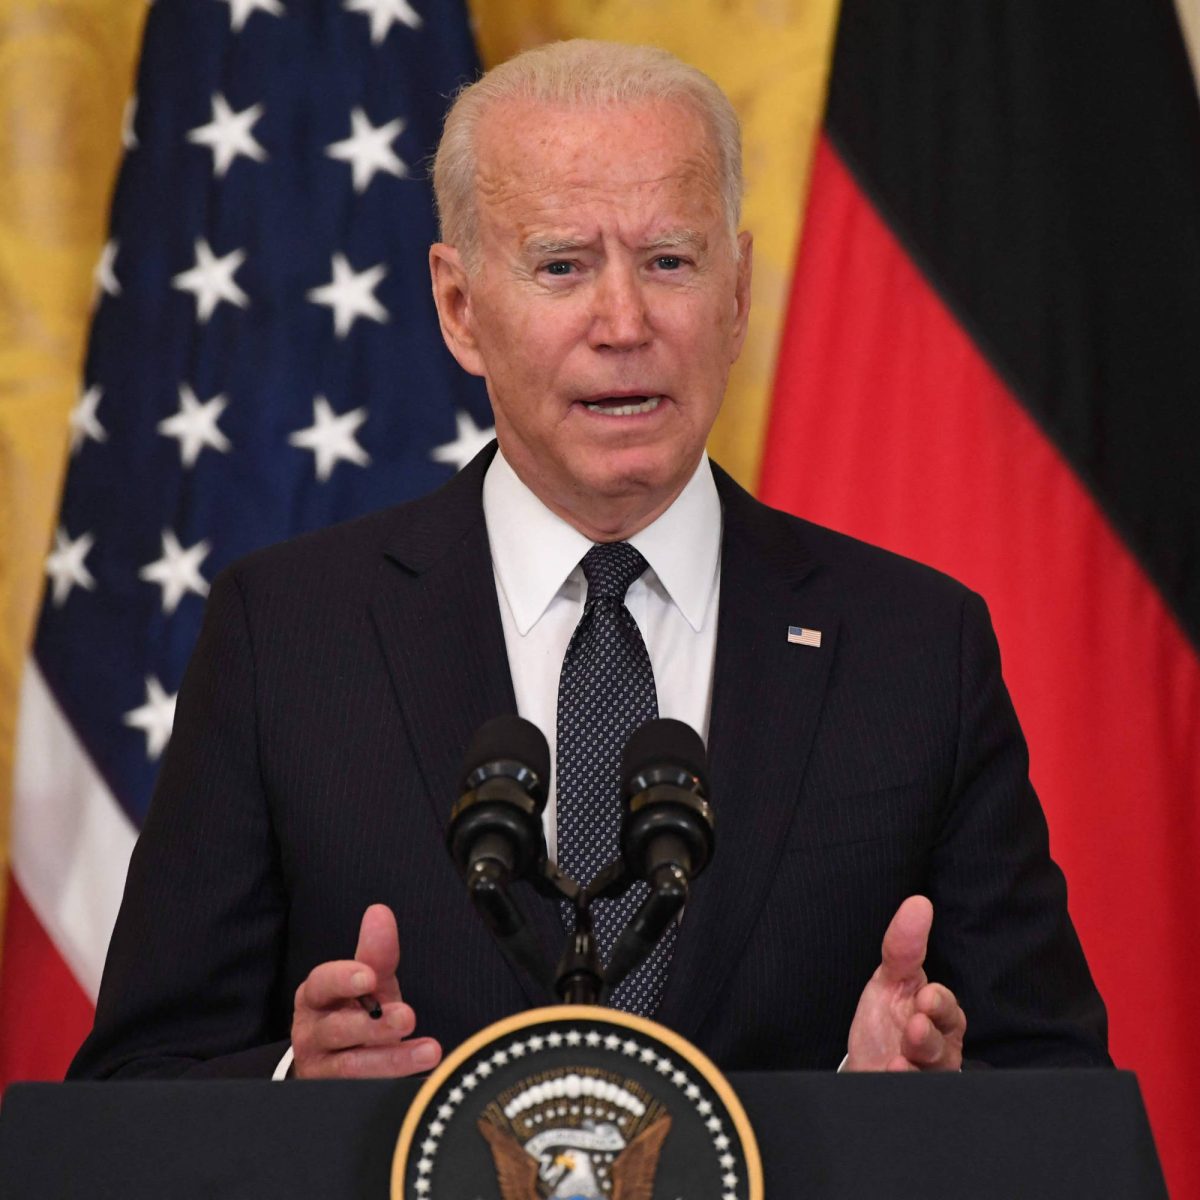 Biden urge a restringir el uso de las armas tras varios sucesos violentos